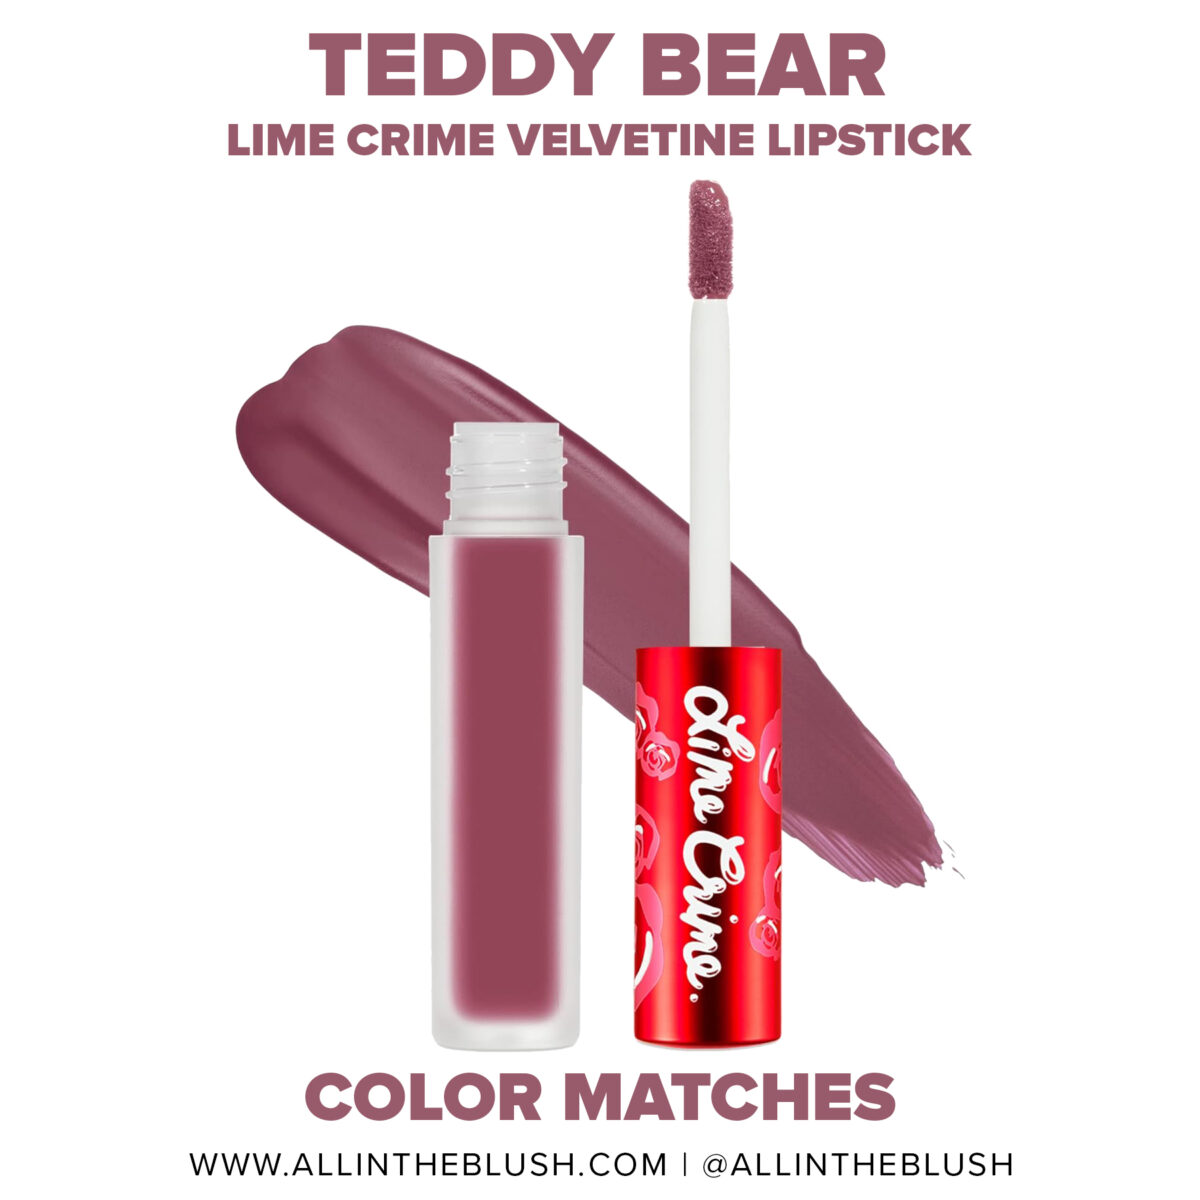 Lime Crime Teddy Bear Velvetine Liquid Lipstick Dupes